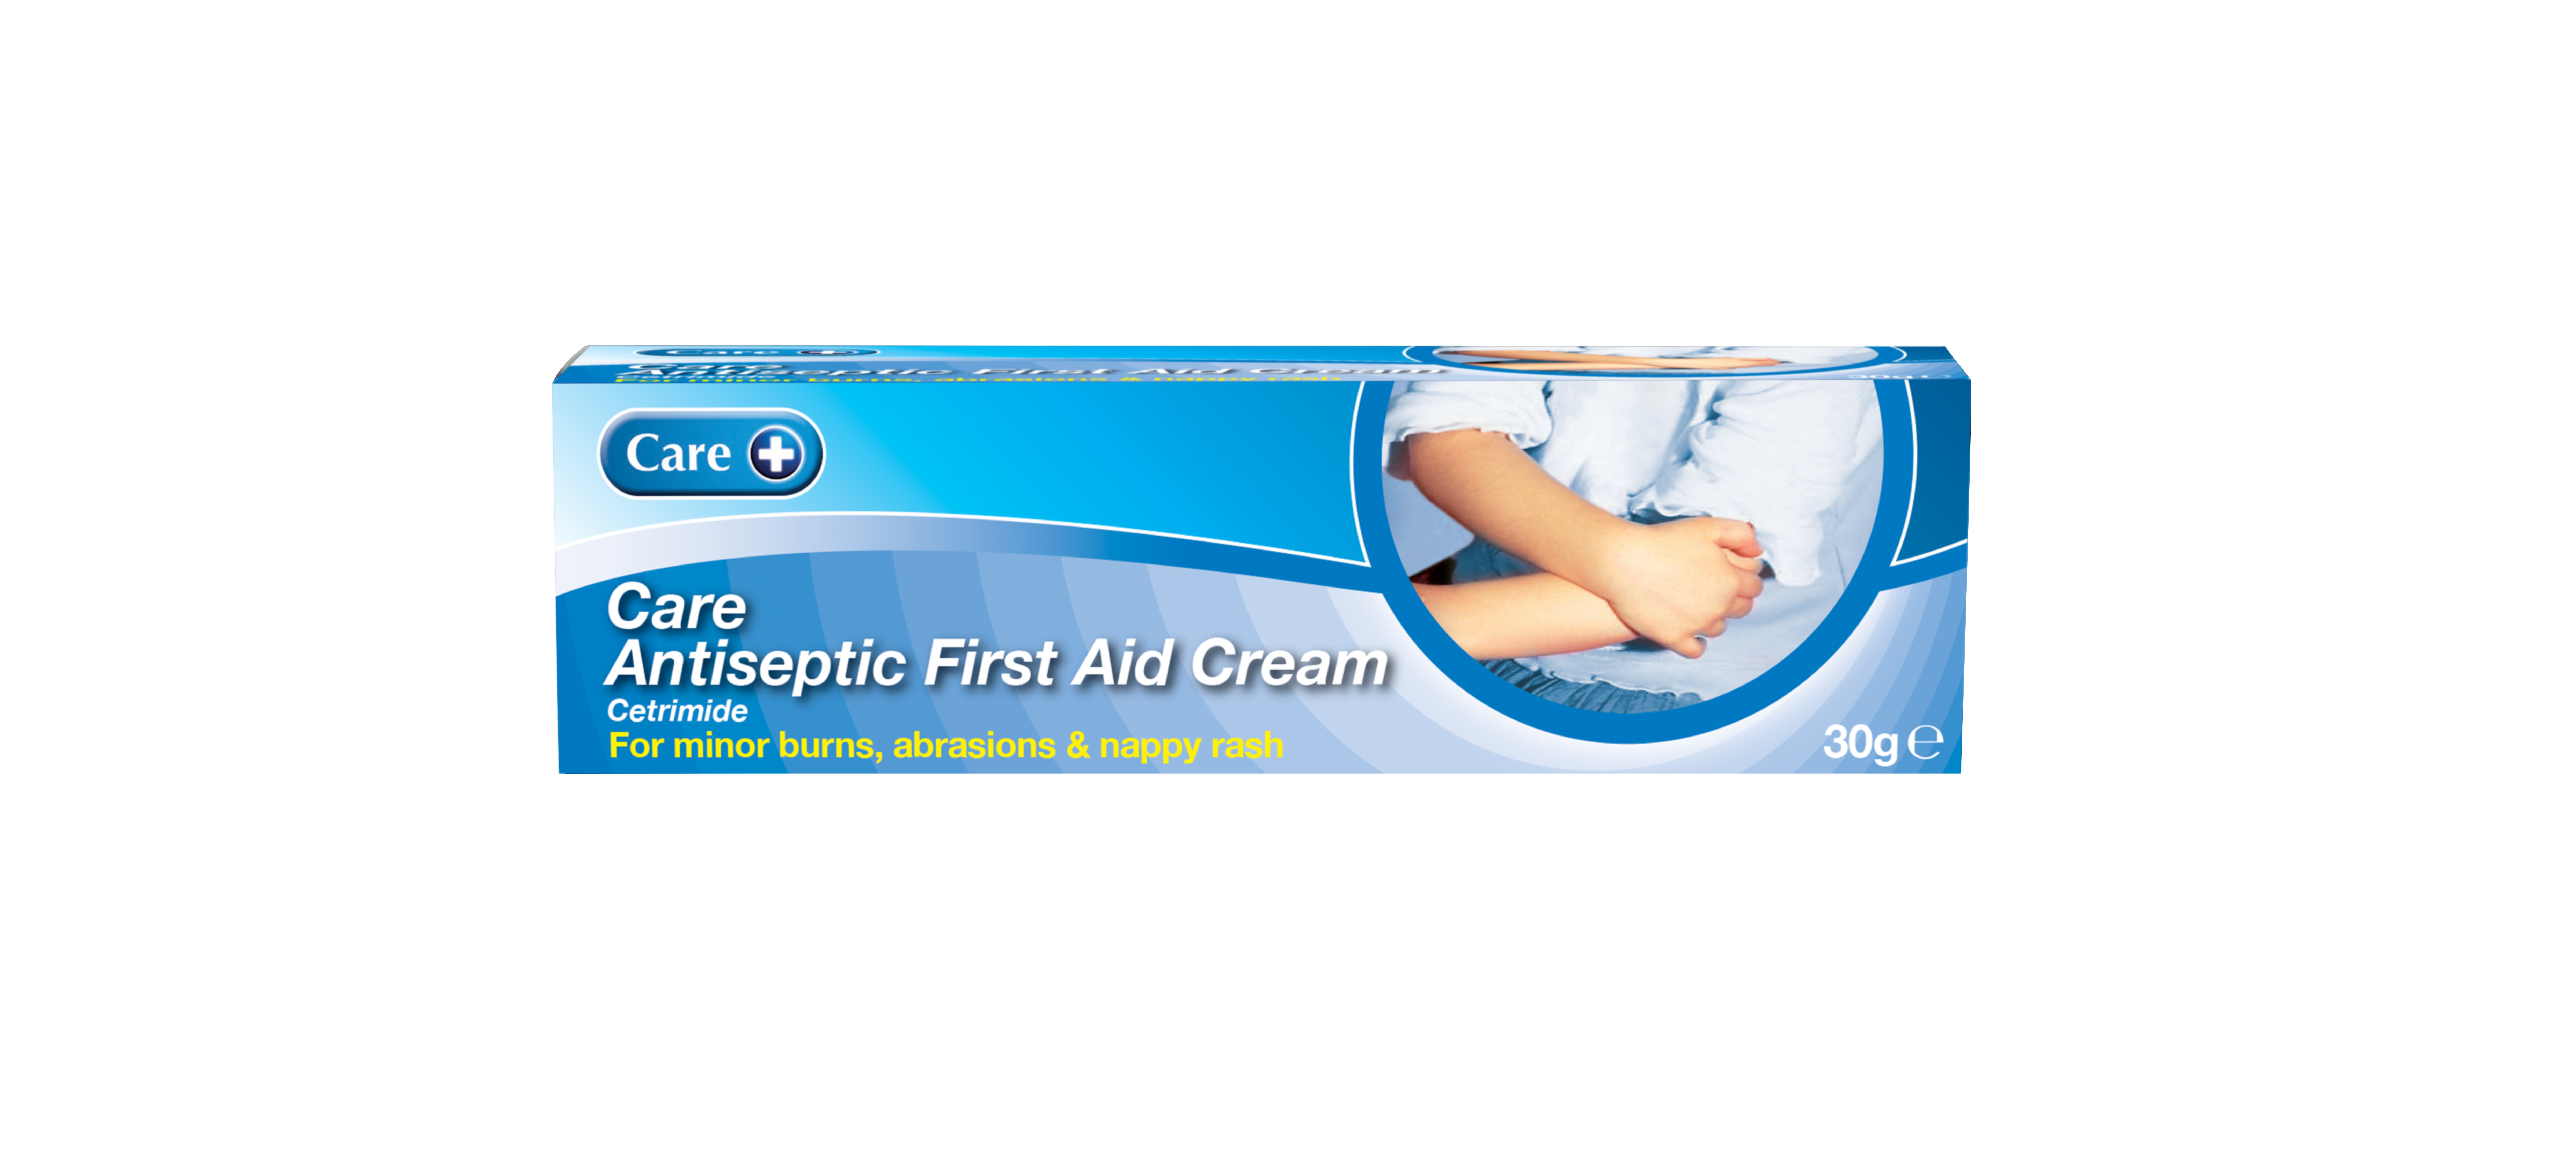 Care Antiseptic First Aid Cream